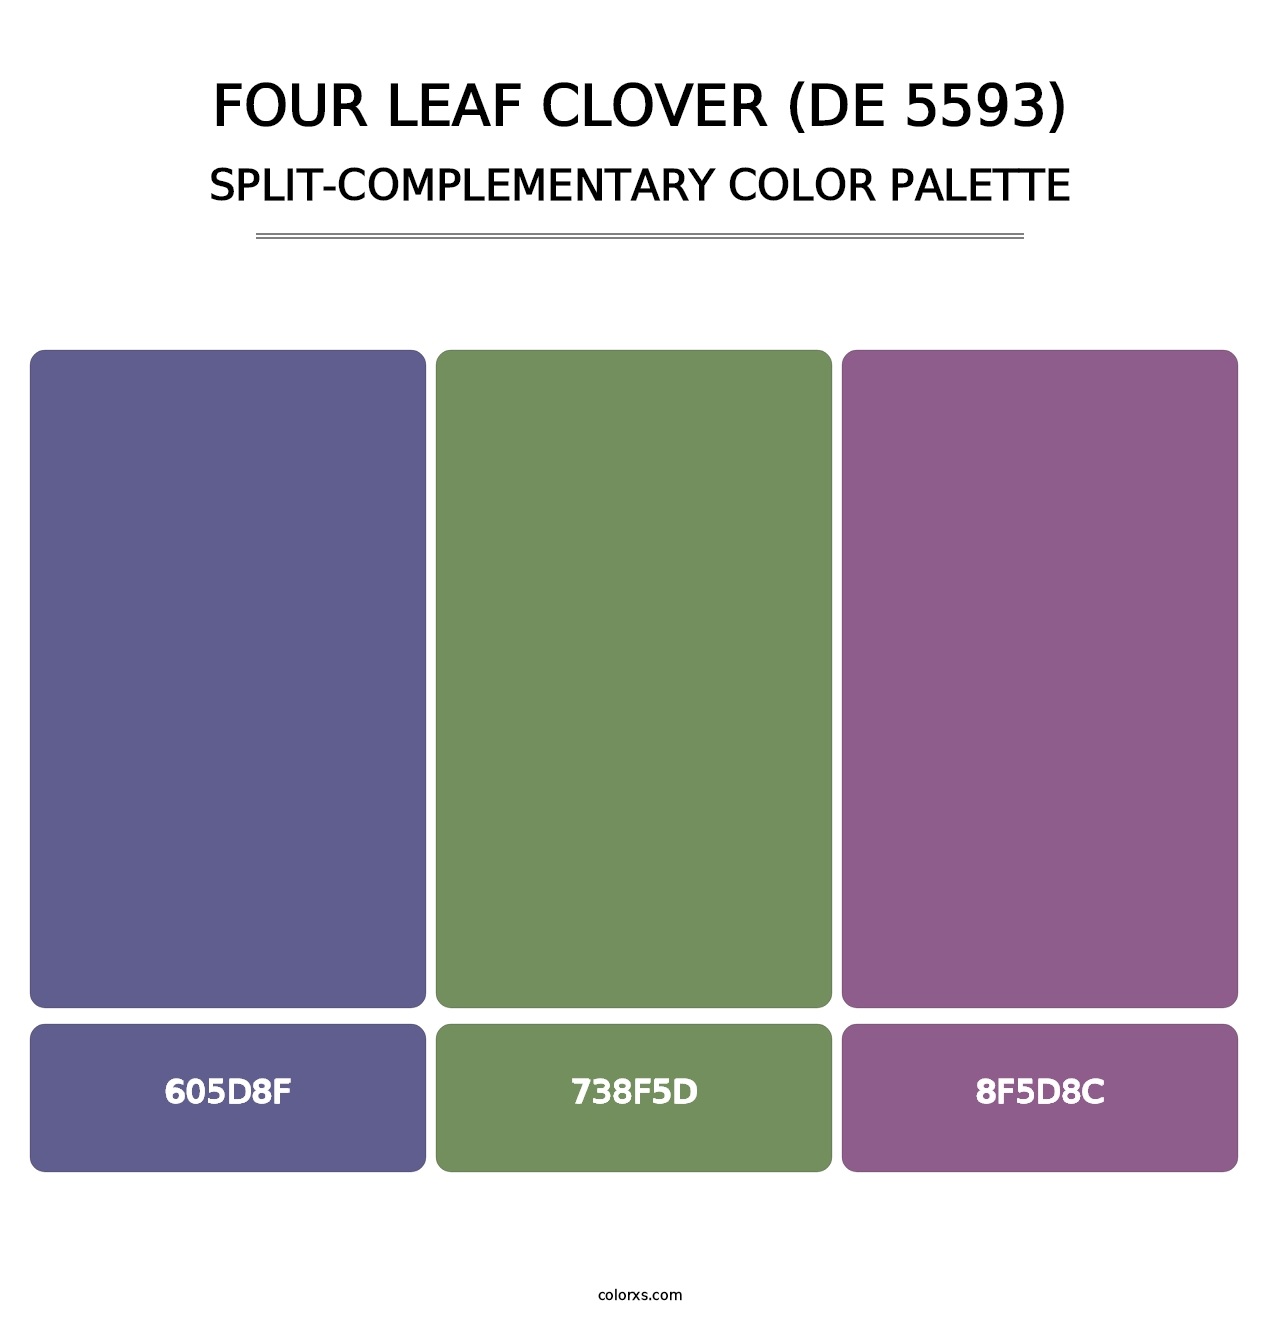 Four Leaf Clover (DE 5593) - Split-Complementary Color Palette